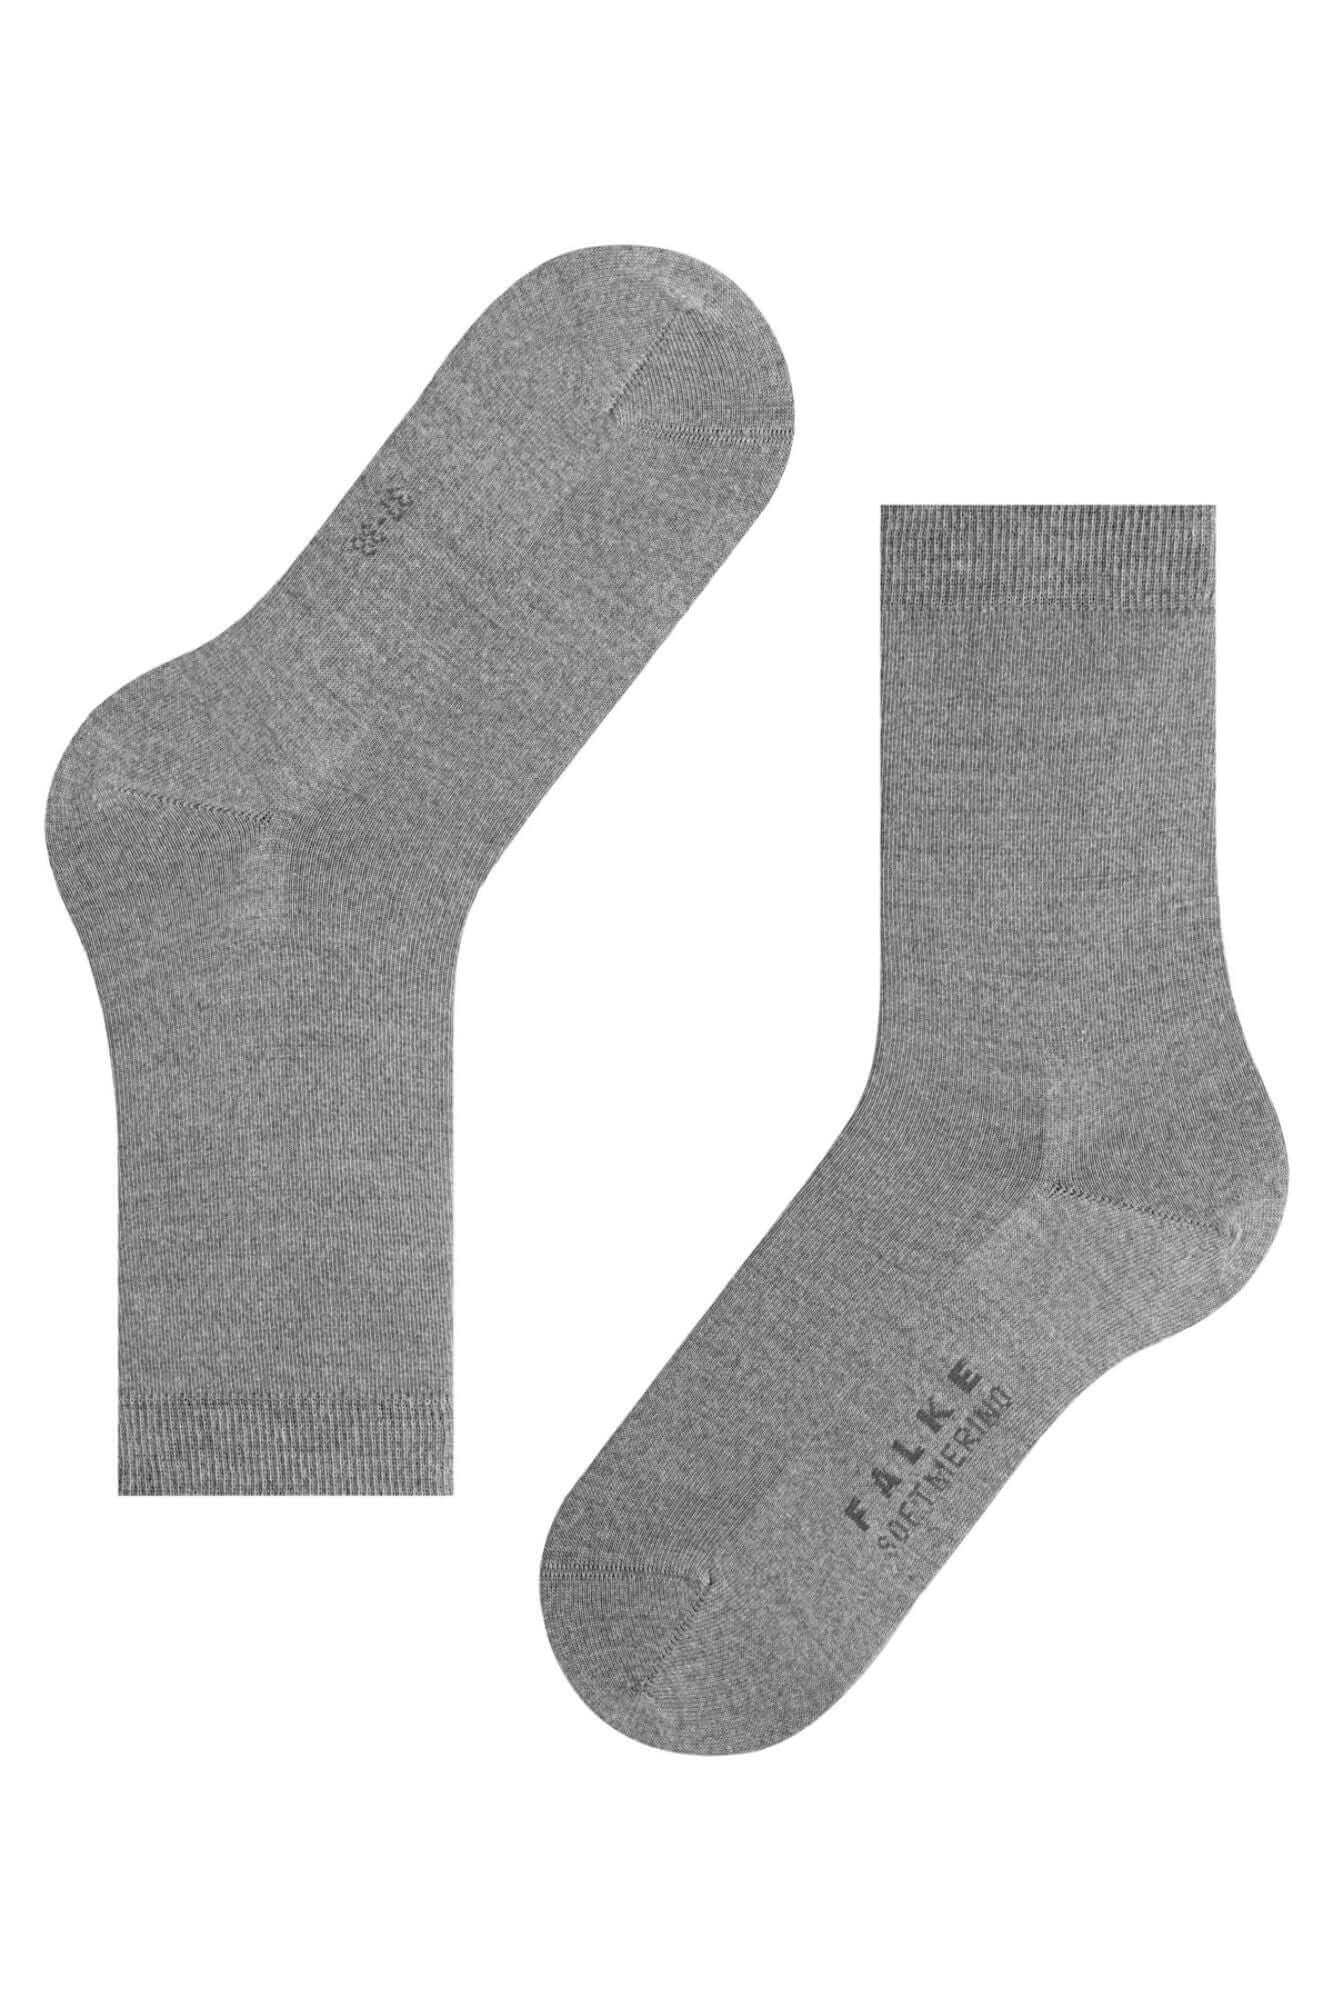 Softmerino Women Socks